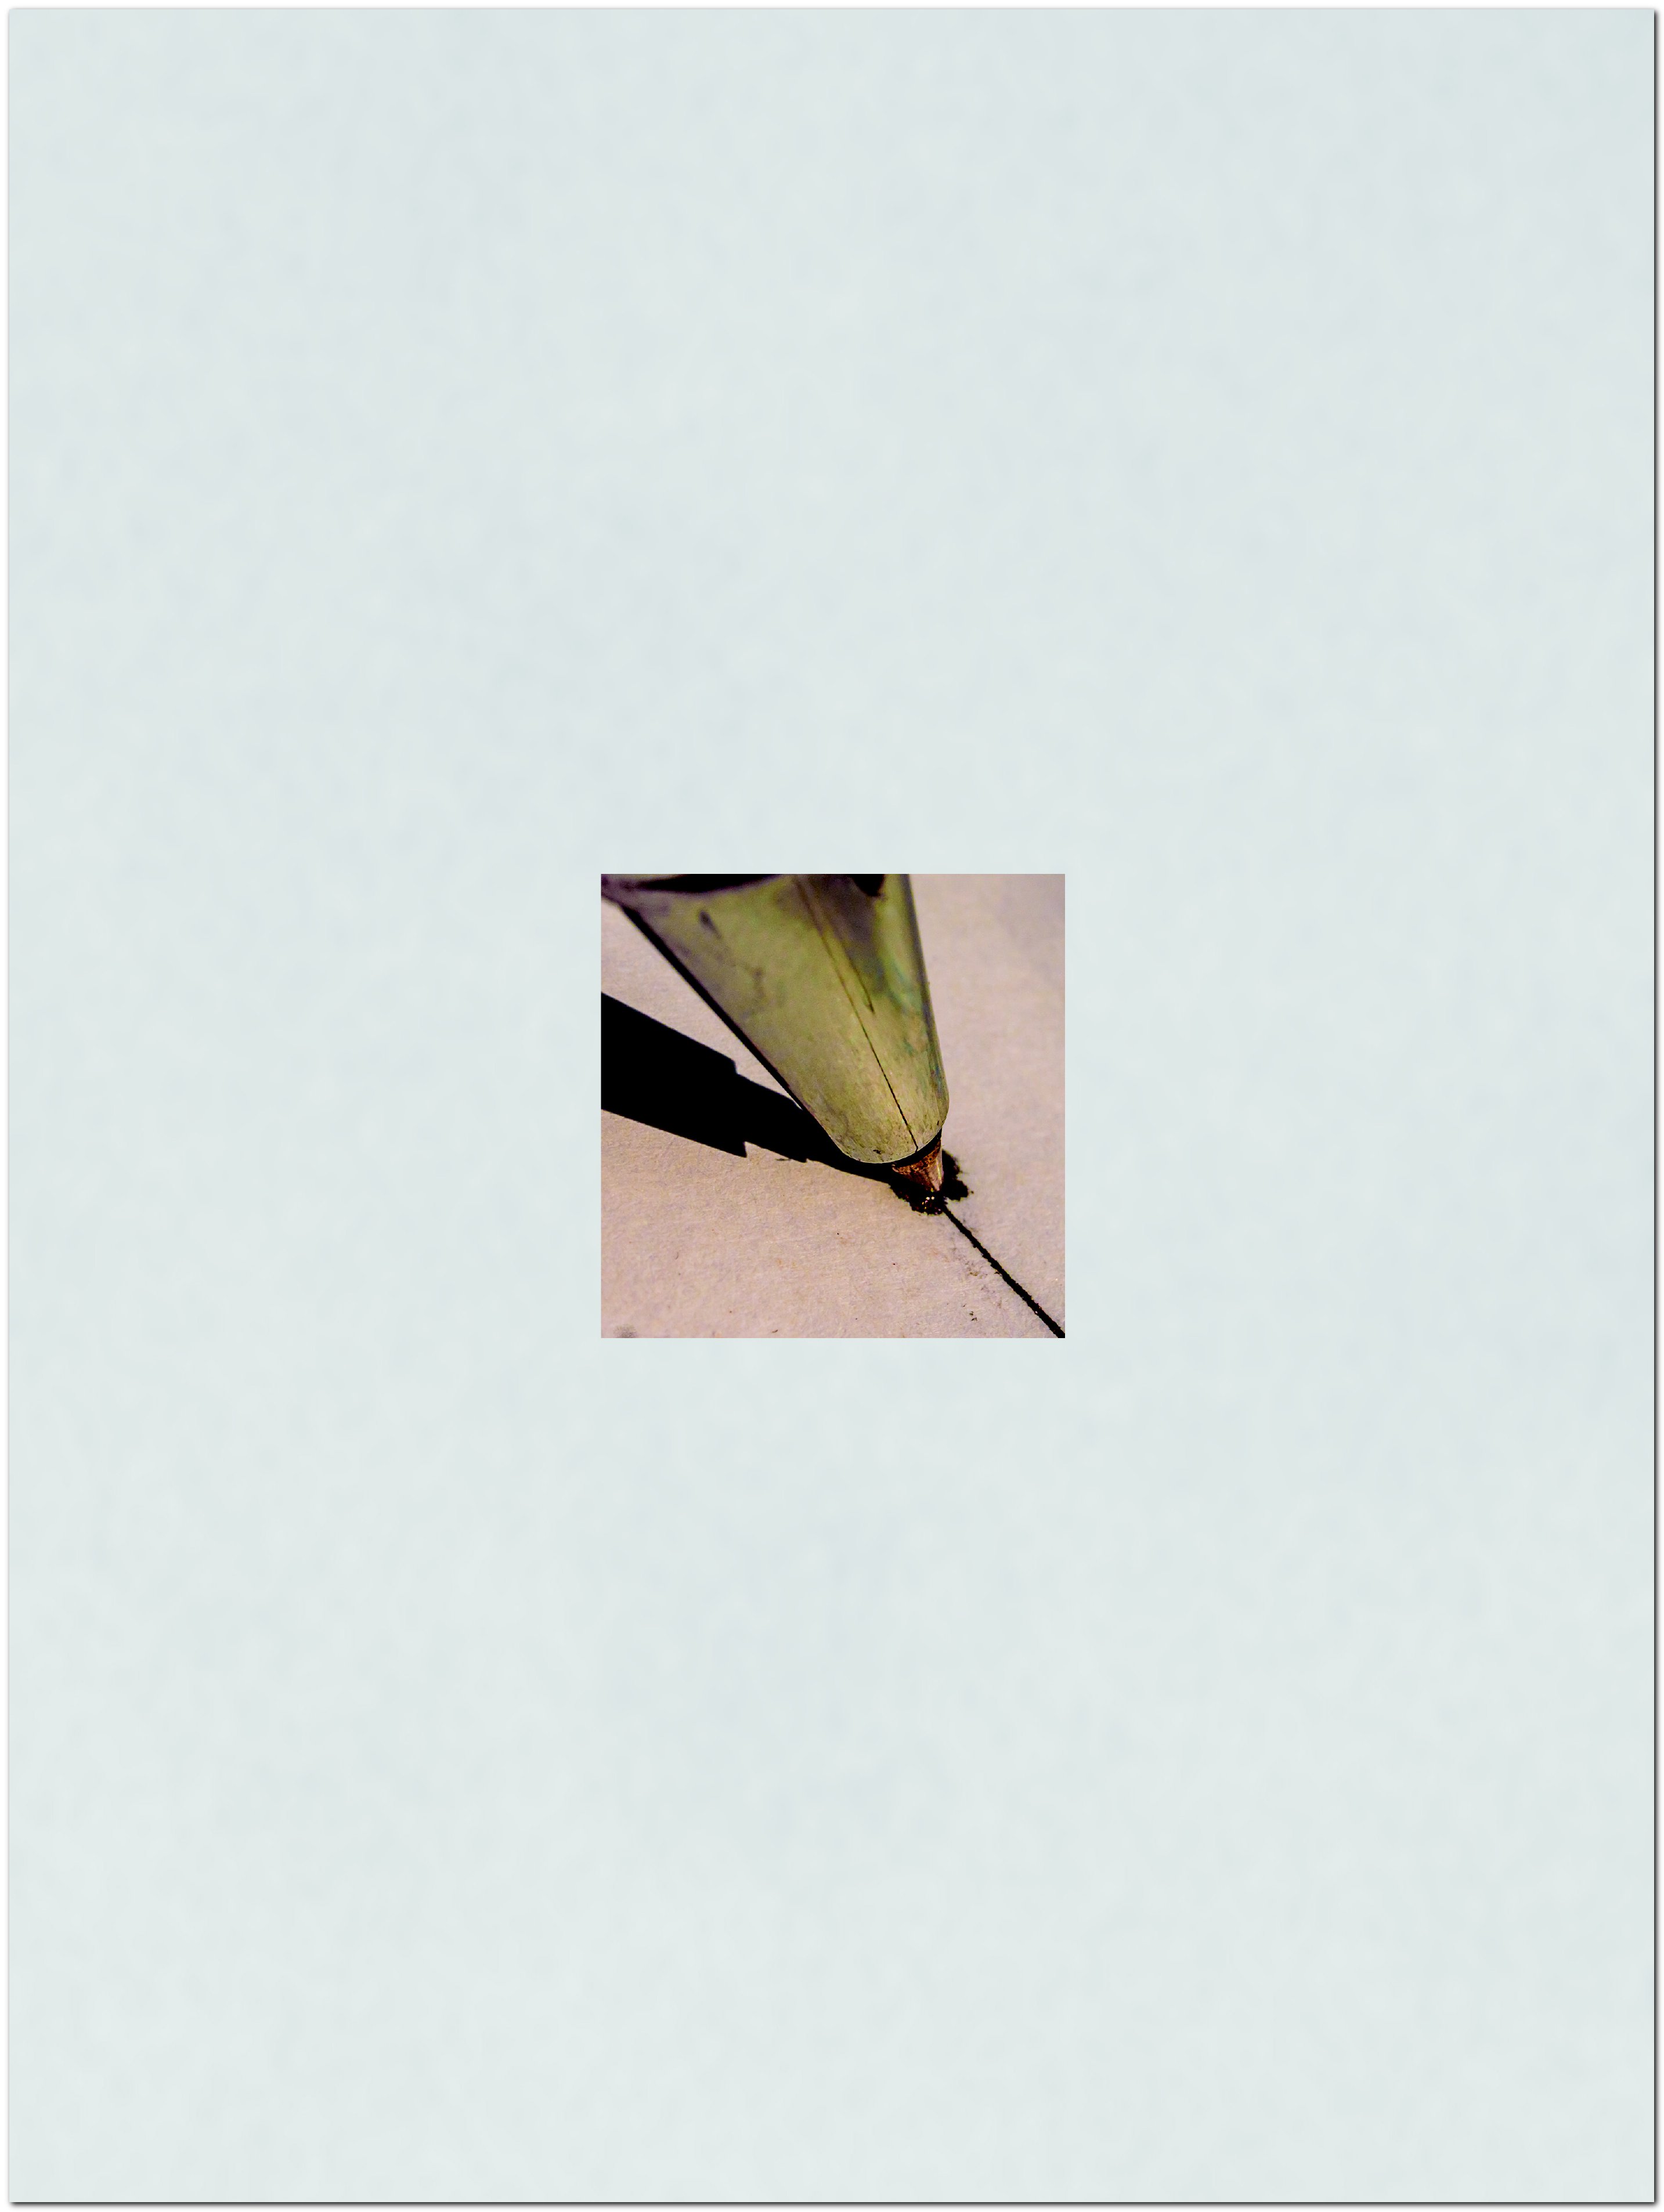 Imagen detalle de un bolígrafo clavándose en papel grueso.